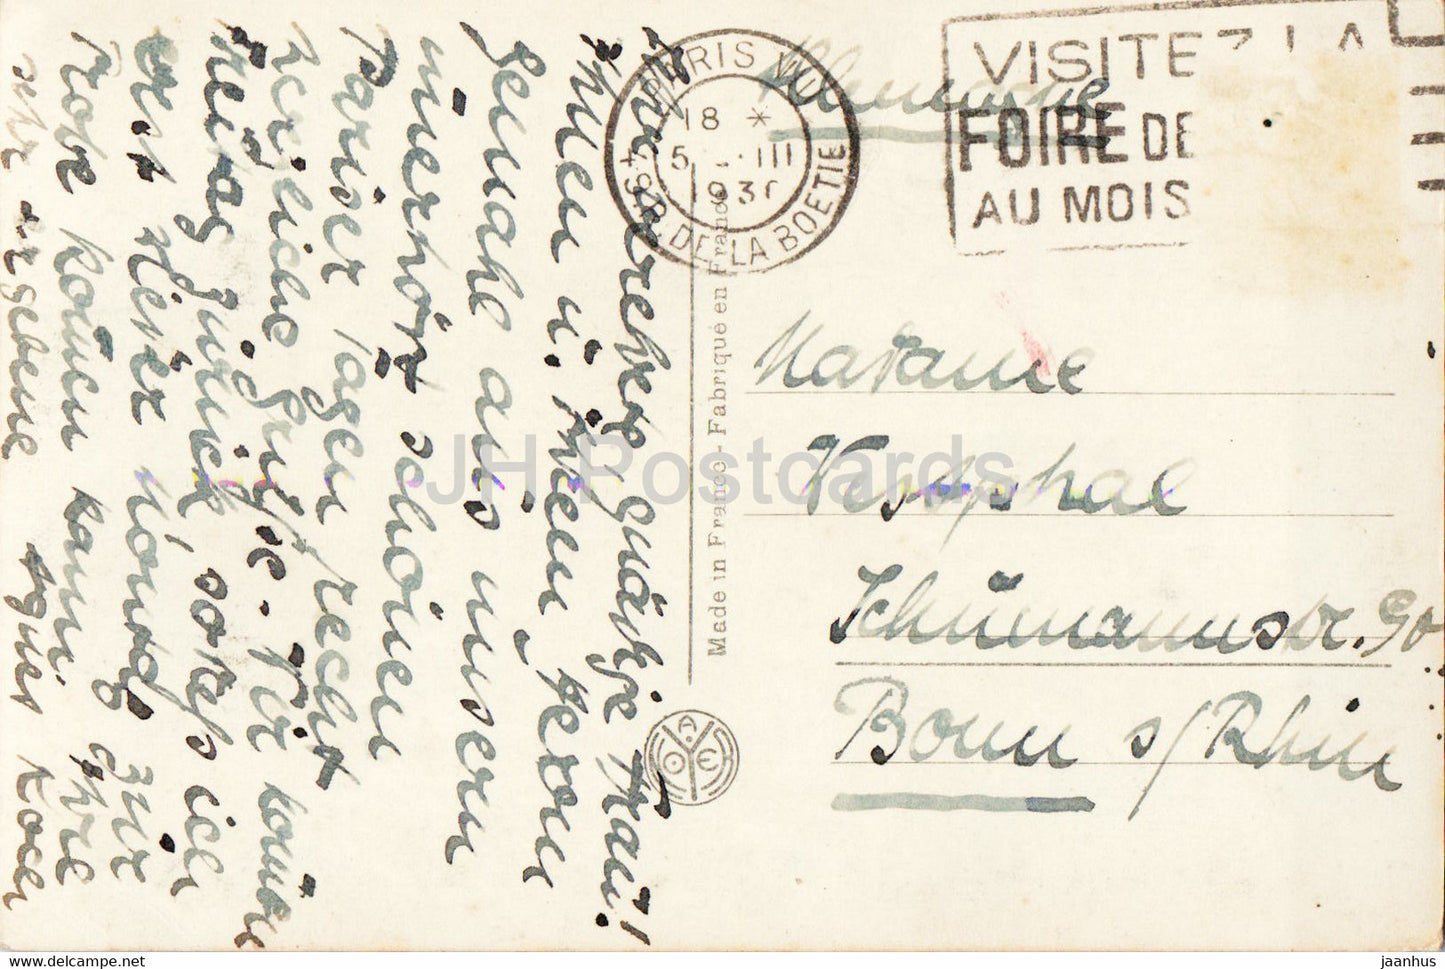 Paris - La Place de la Concorde et la Madeleine - 295 - carte postale ancienne - 1930 - France - occasion